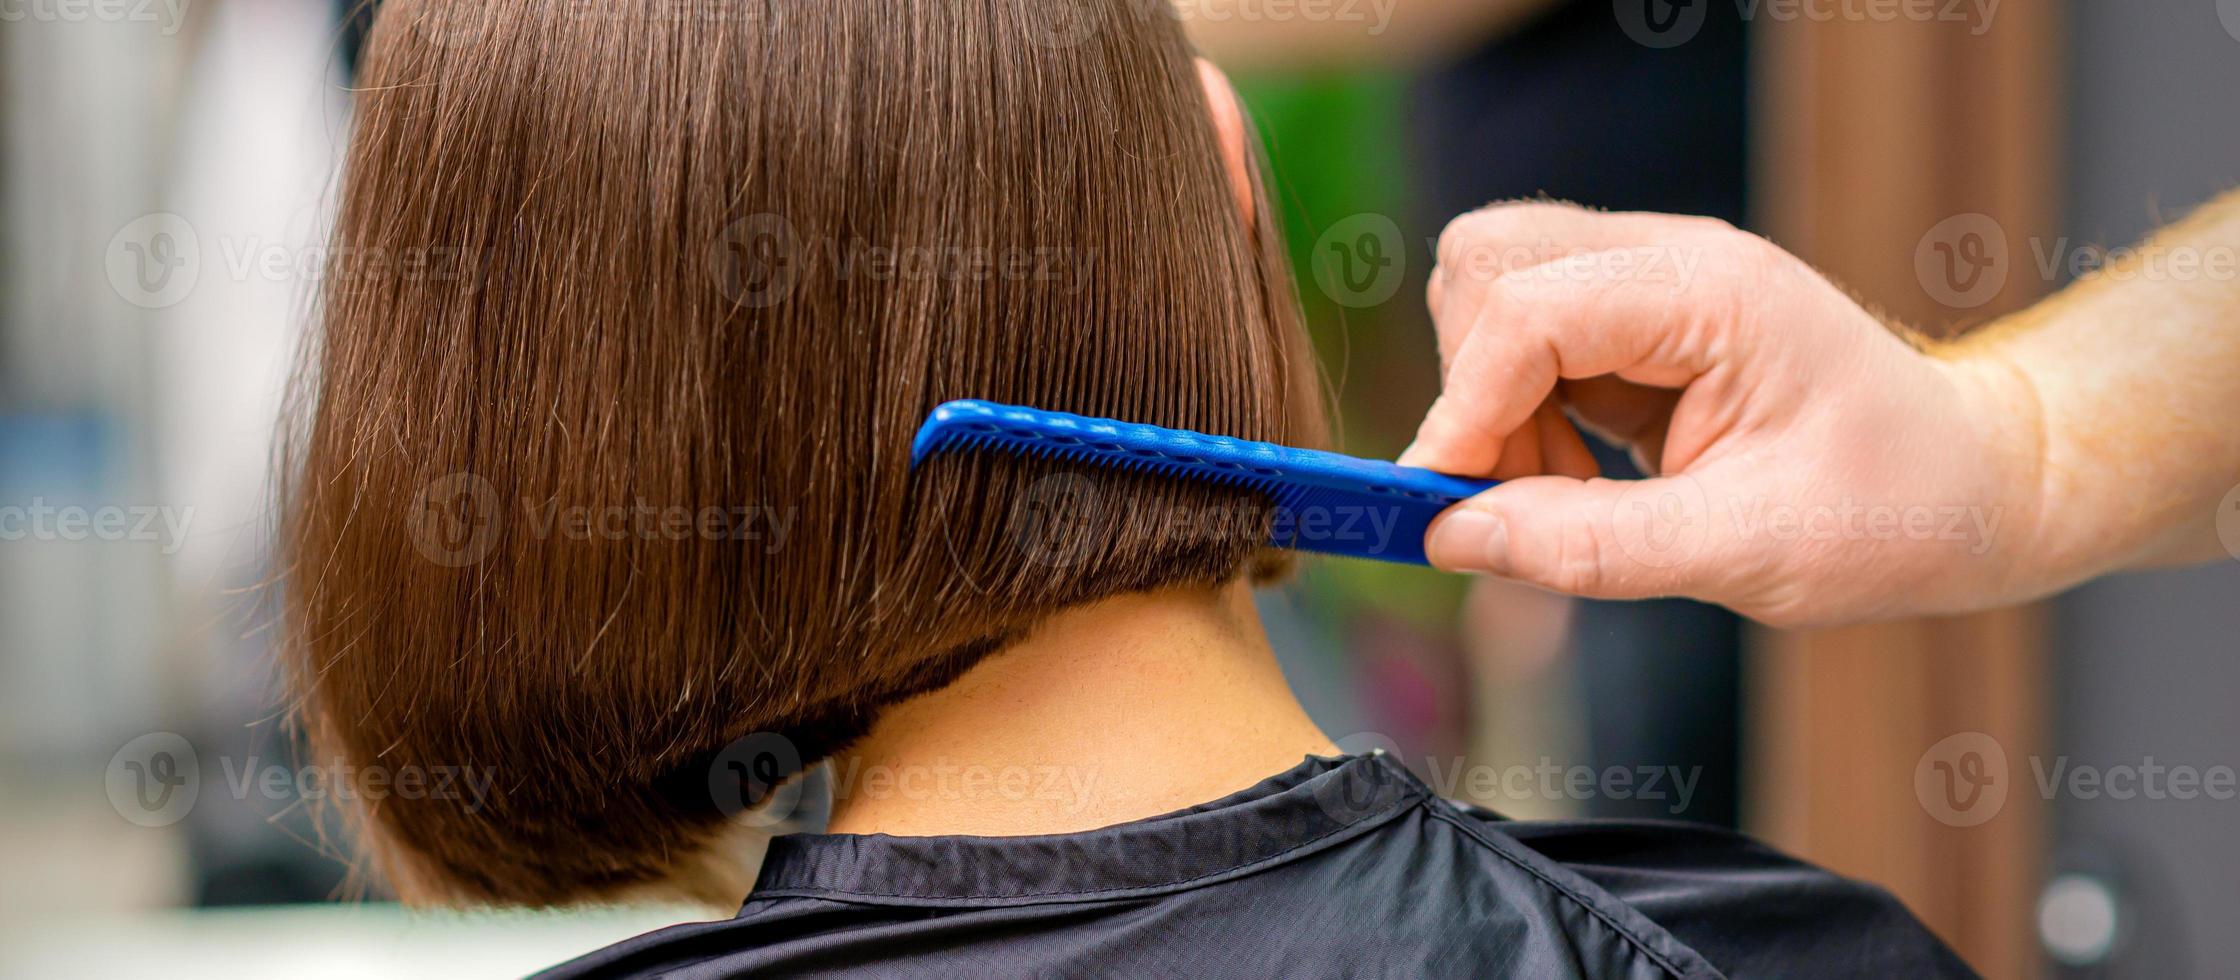 cabeleireiro pentear cabelo do mulher foto